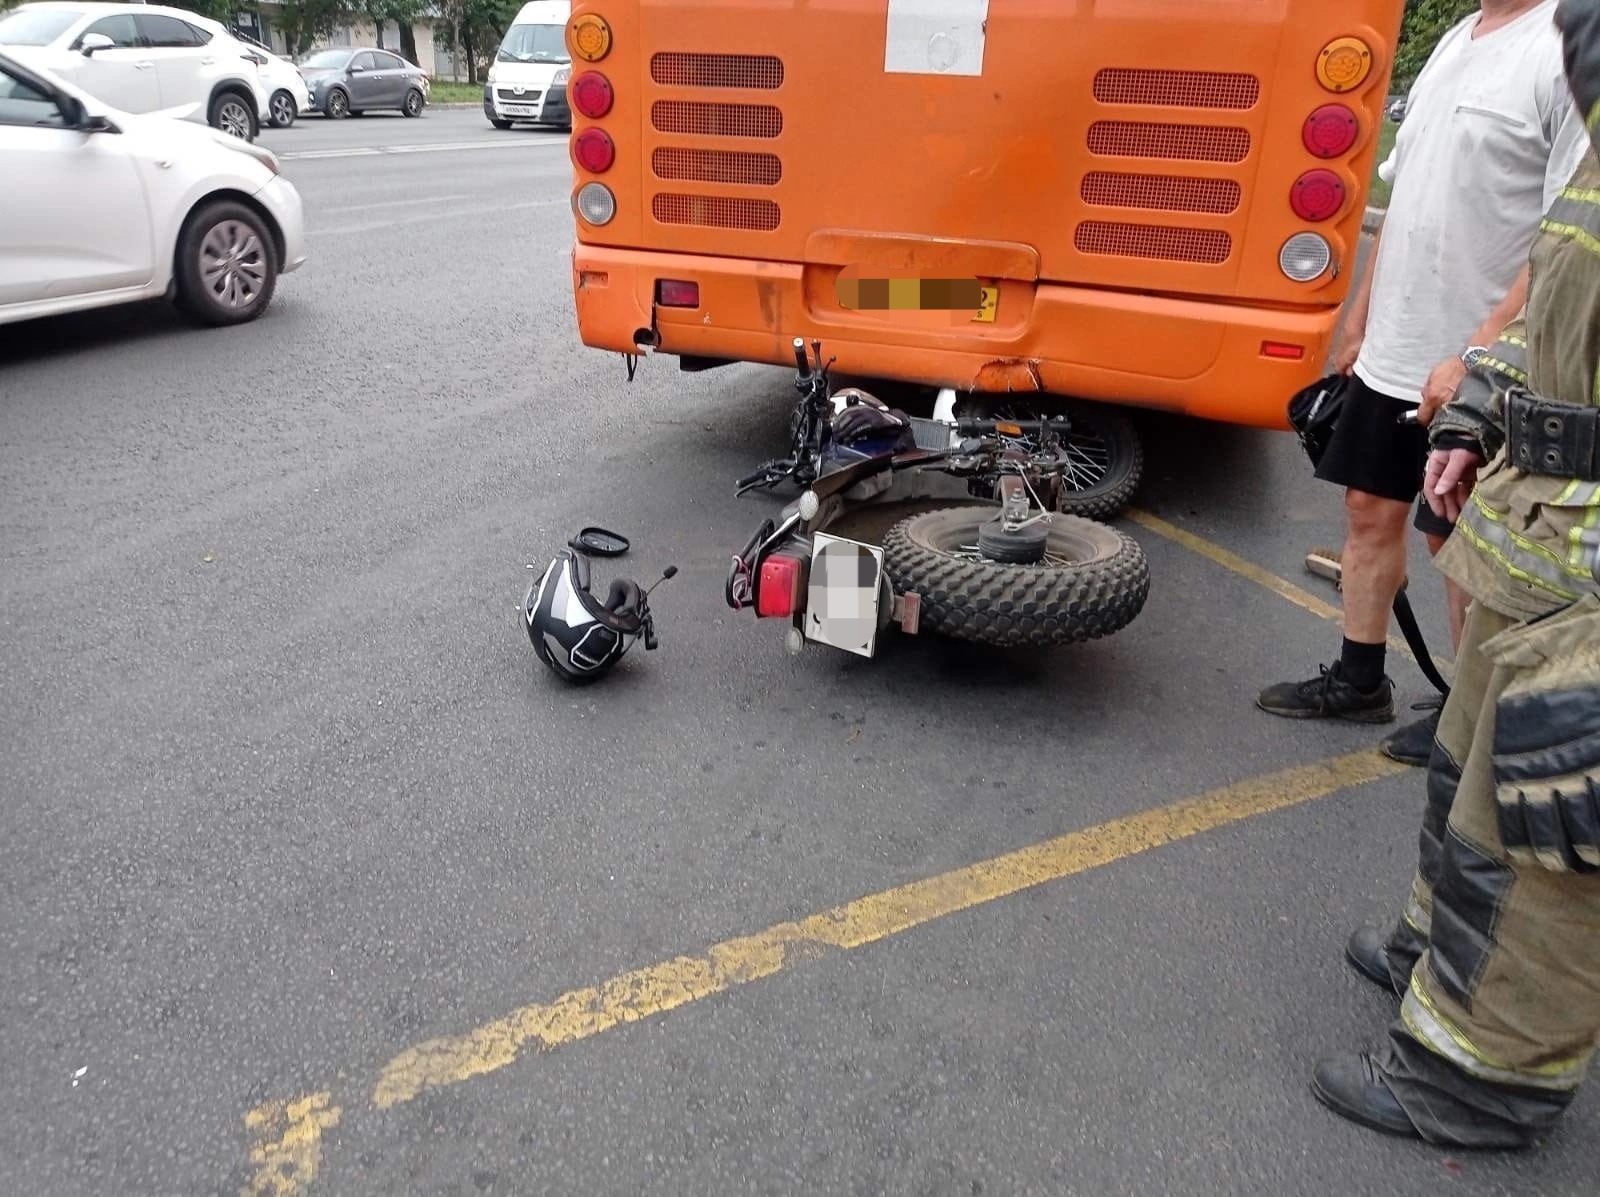 На Московском шоссе произошла авария с автобусом и мотоциклом